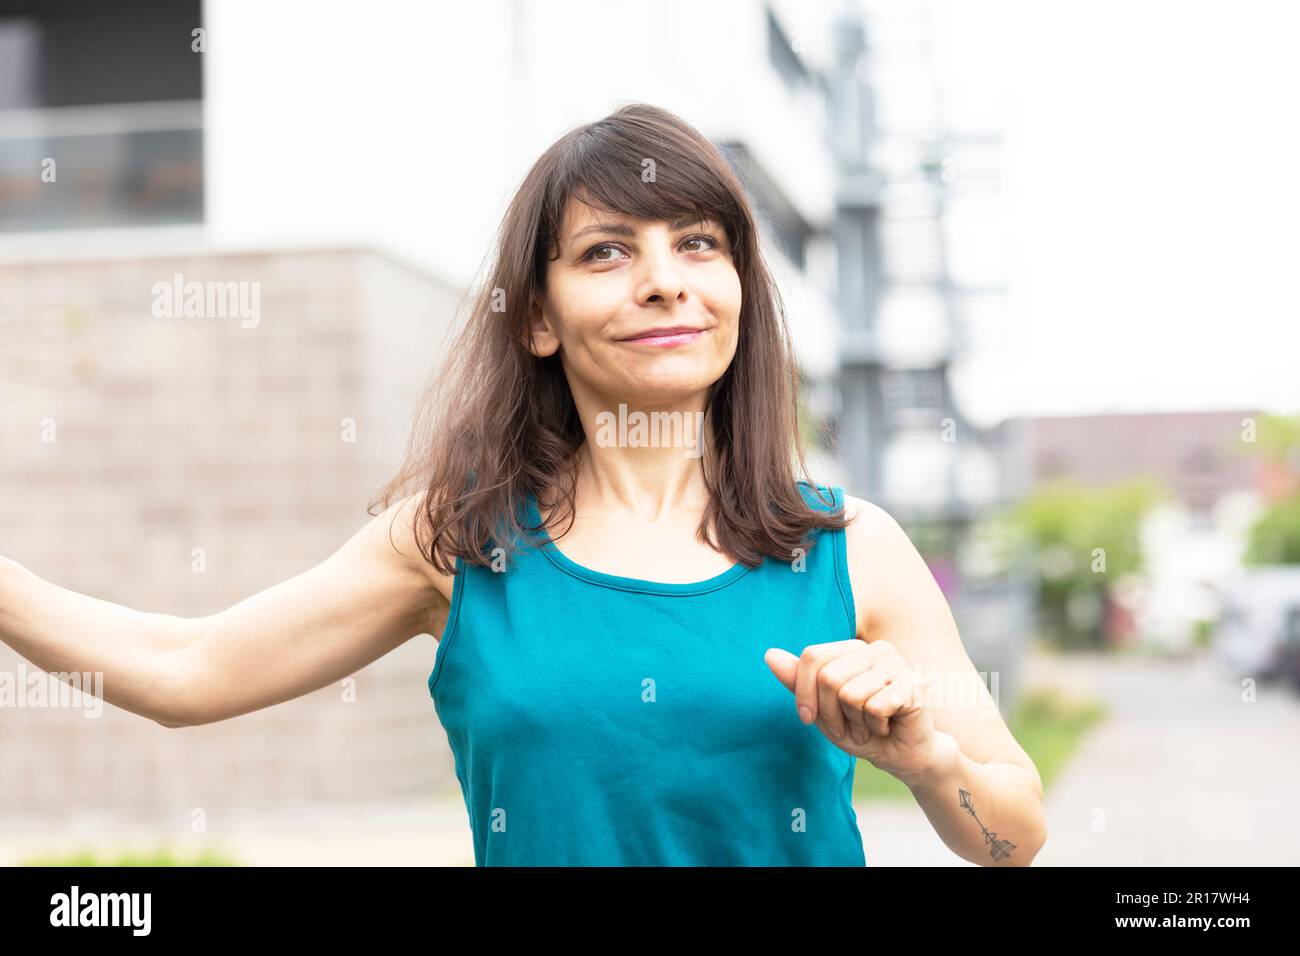 Eine Frau mit langen offenen Haaren, die in der Stadt tanzt Stockfoto